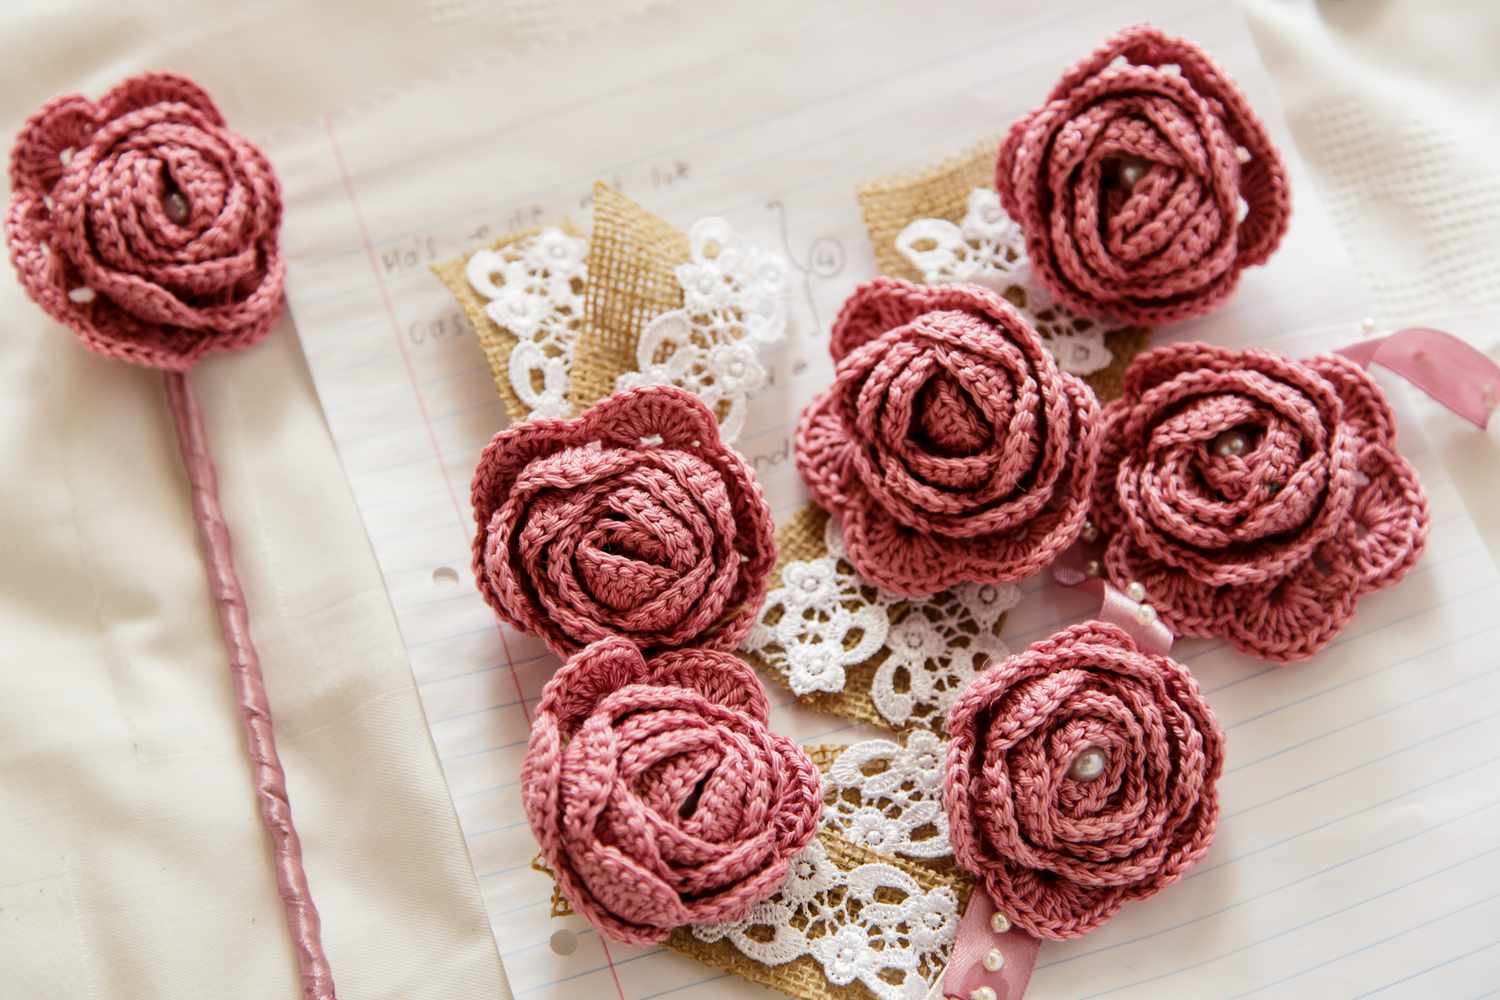 10 Unique Ways To Use A Crochet Rose Bouquet - You Won't Believe #7!